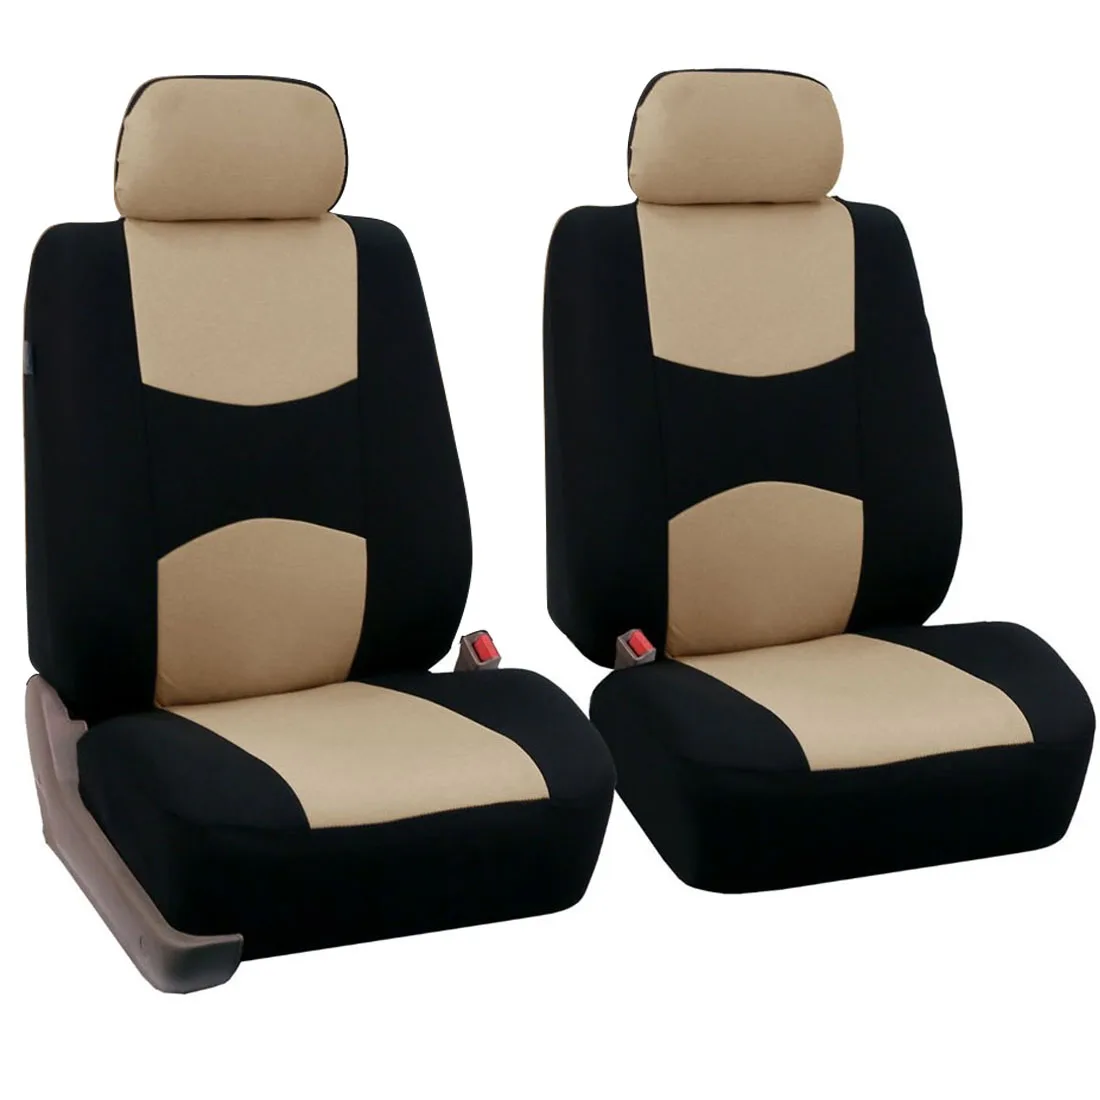 Dewtreetali 9 шт/4 шт набор задних передних автомобильных чехлов для сидений универсальные чехлы для сидений автомобиля протектор полиэстер четыре сезона - Название цвета: Beige